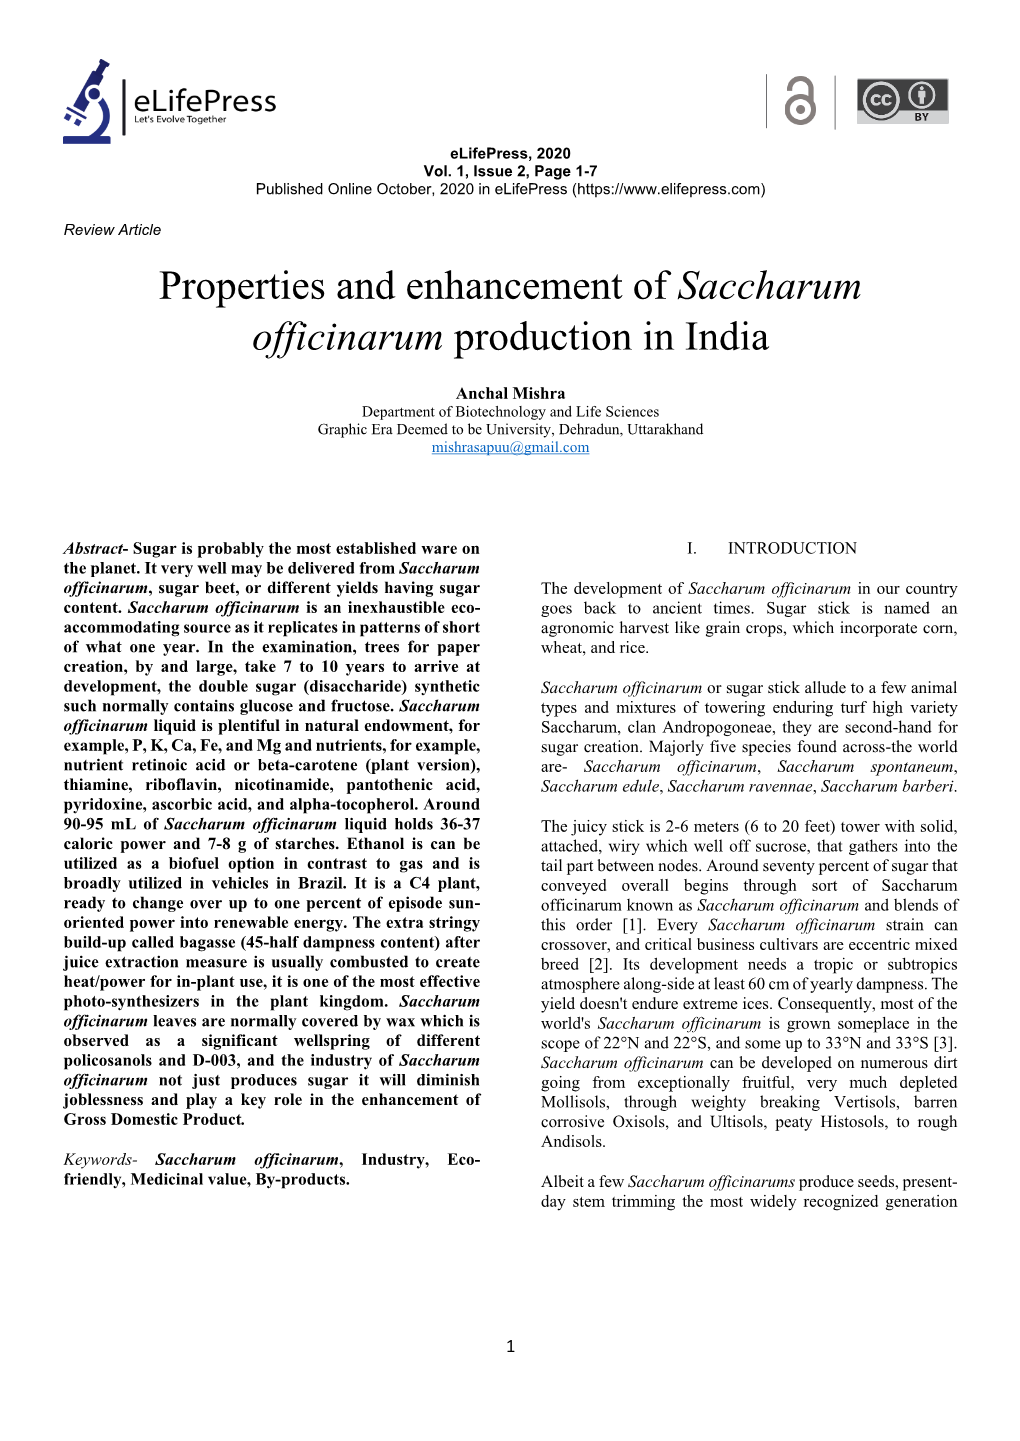 Saccharum Officinarum Production in India